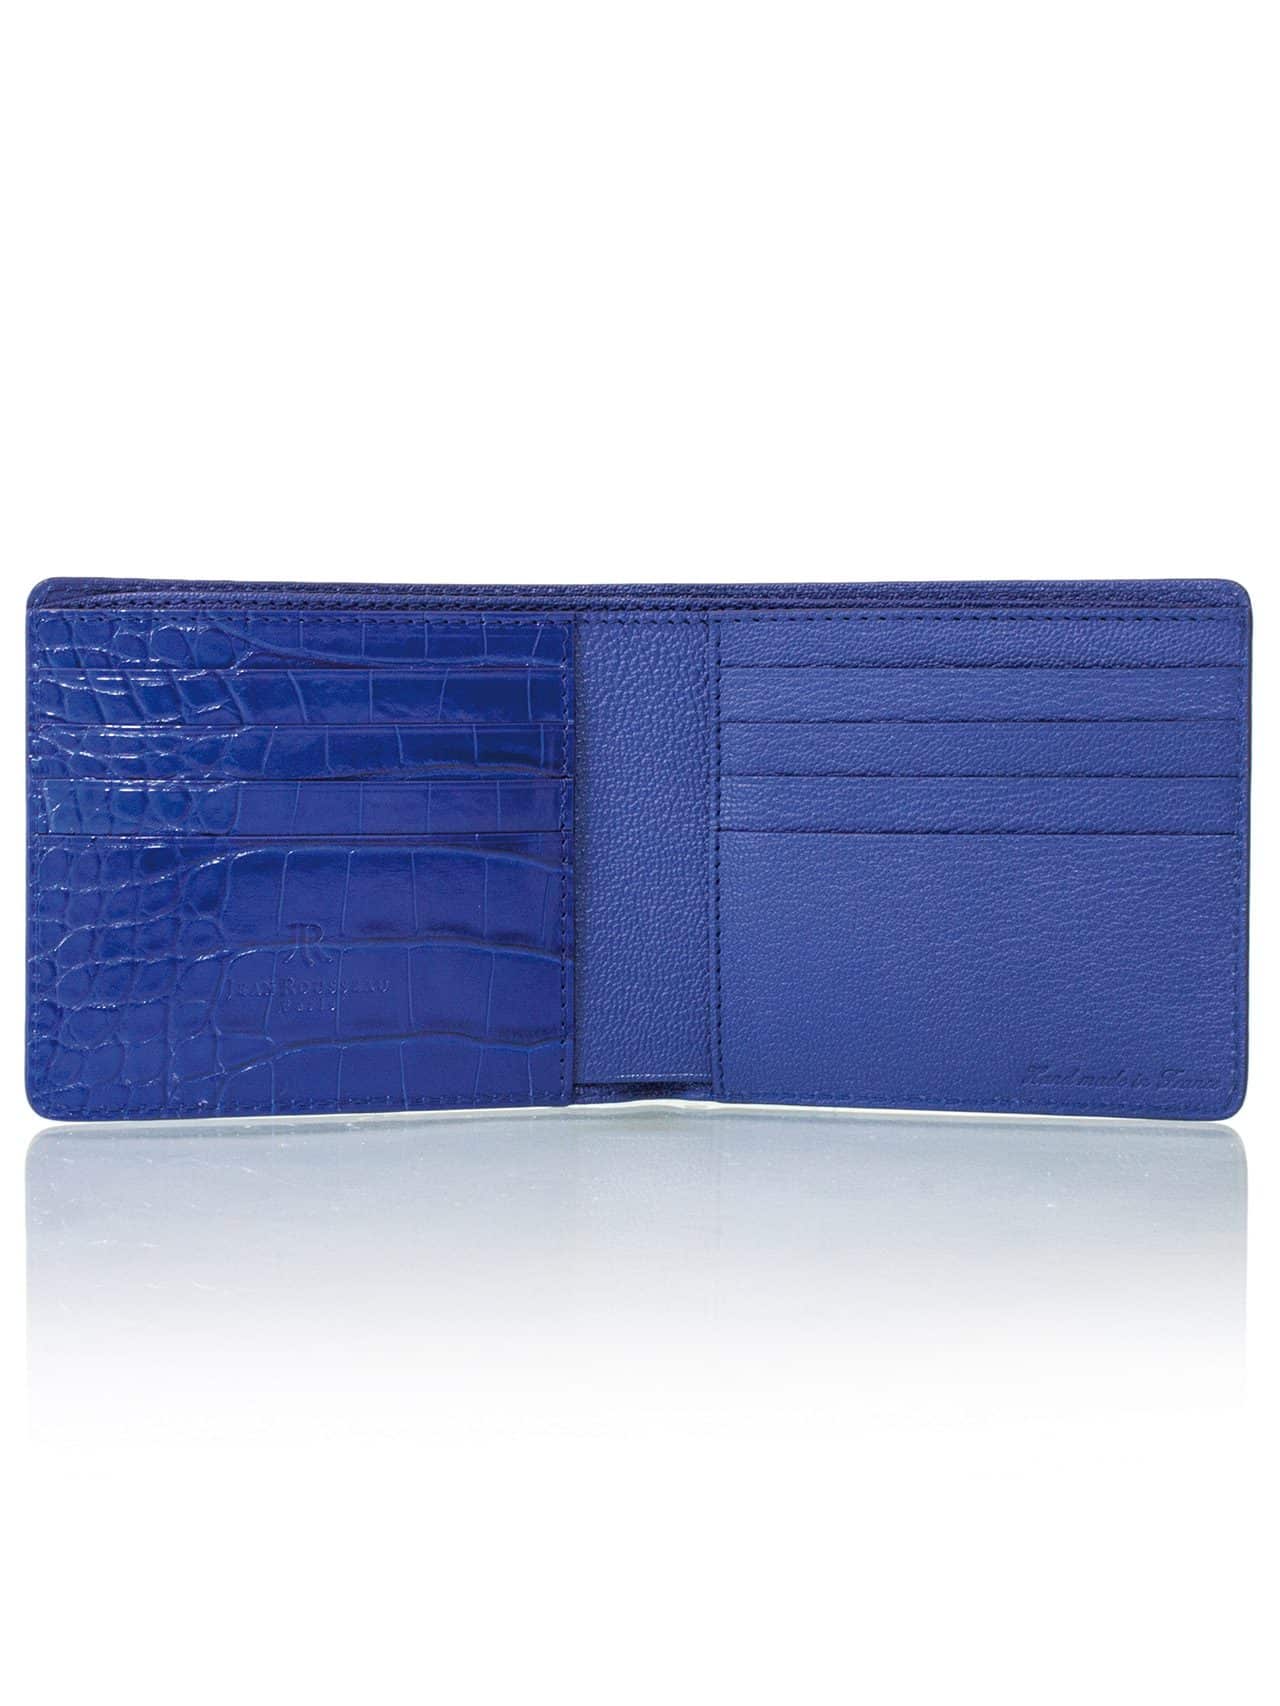 二つ折りポケット財布アリゲーターネイビーブルー - Maison Jean-Rousseau